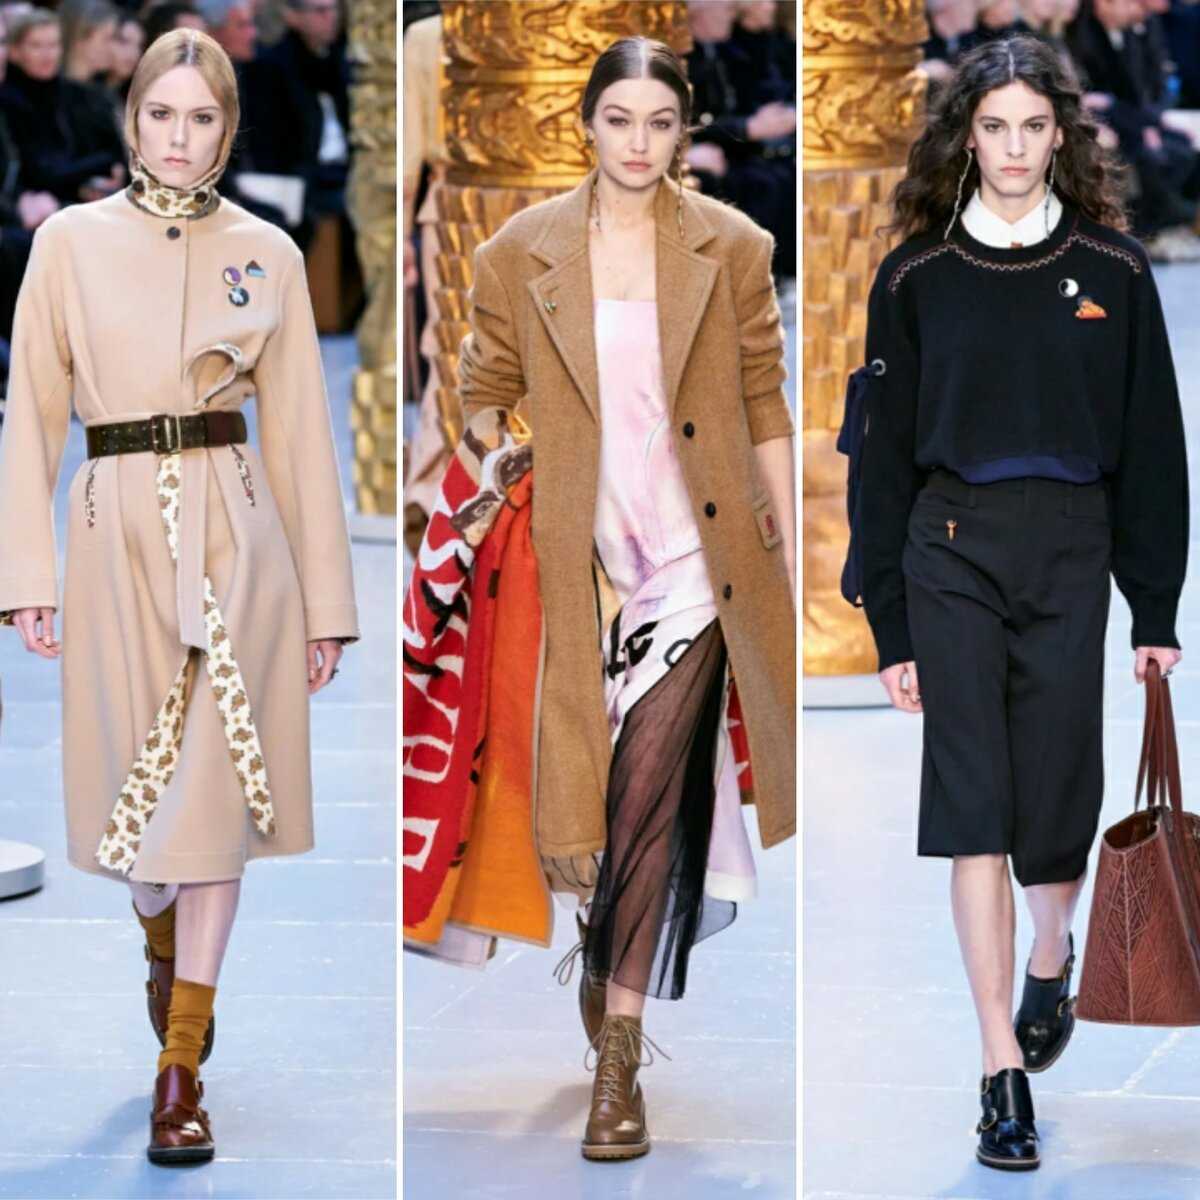 Модное пальто весна 2020. топ-10 оттенков для женщин